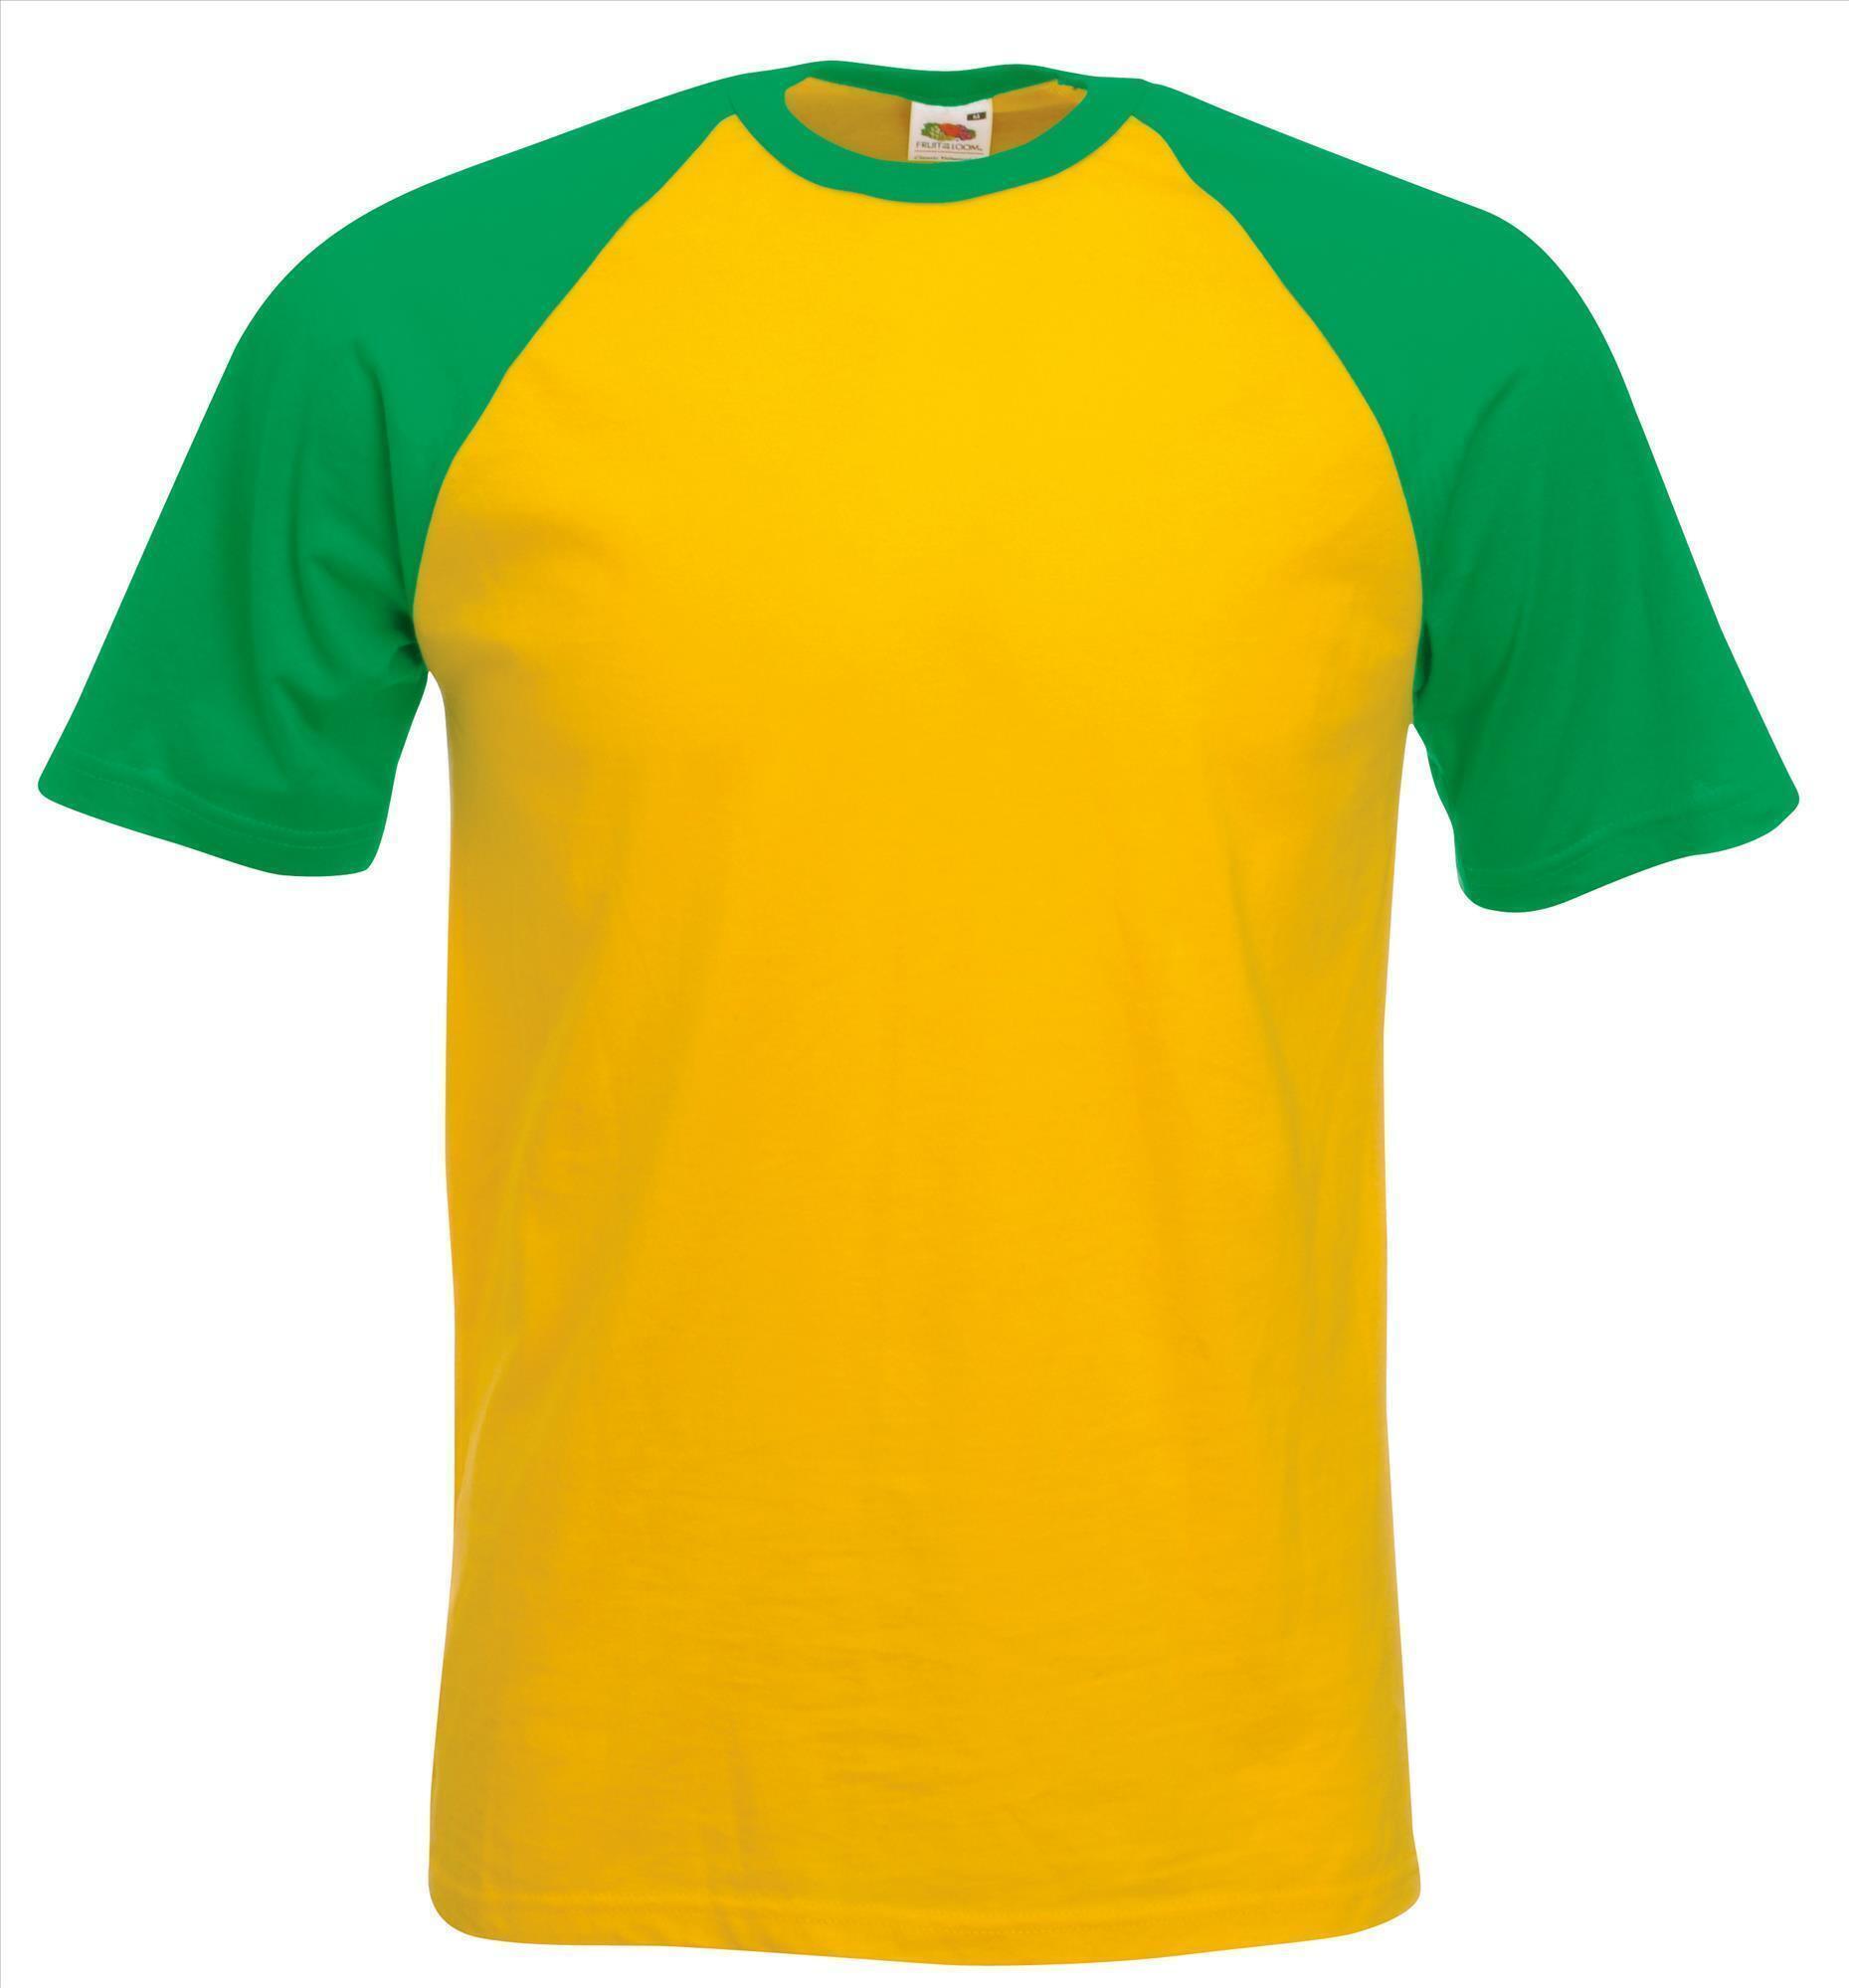 Heren T-shirt met raglanmouwen voor mannen groen met geel